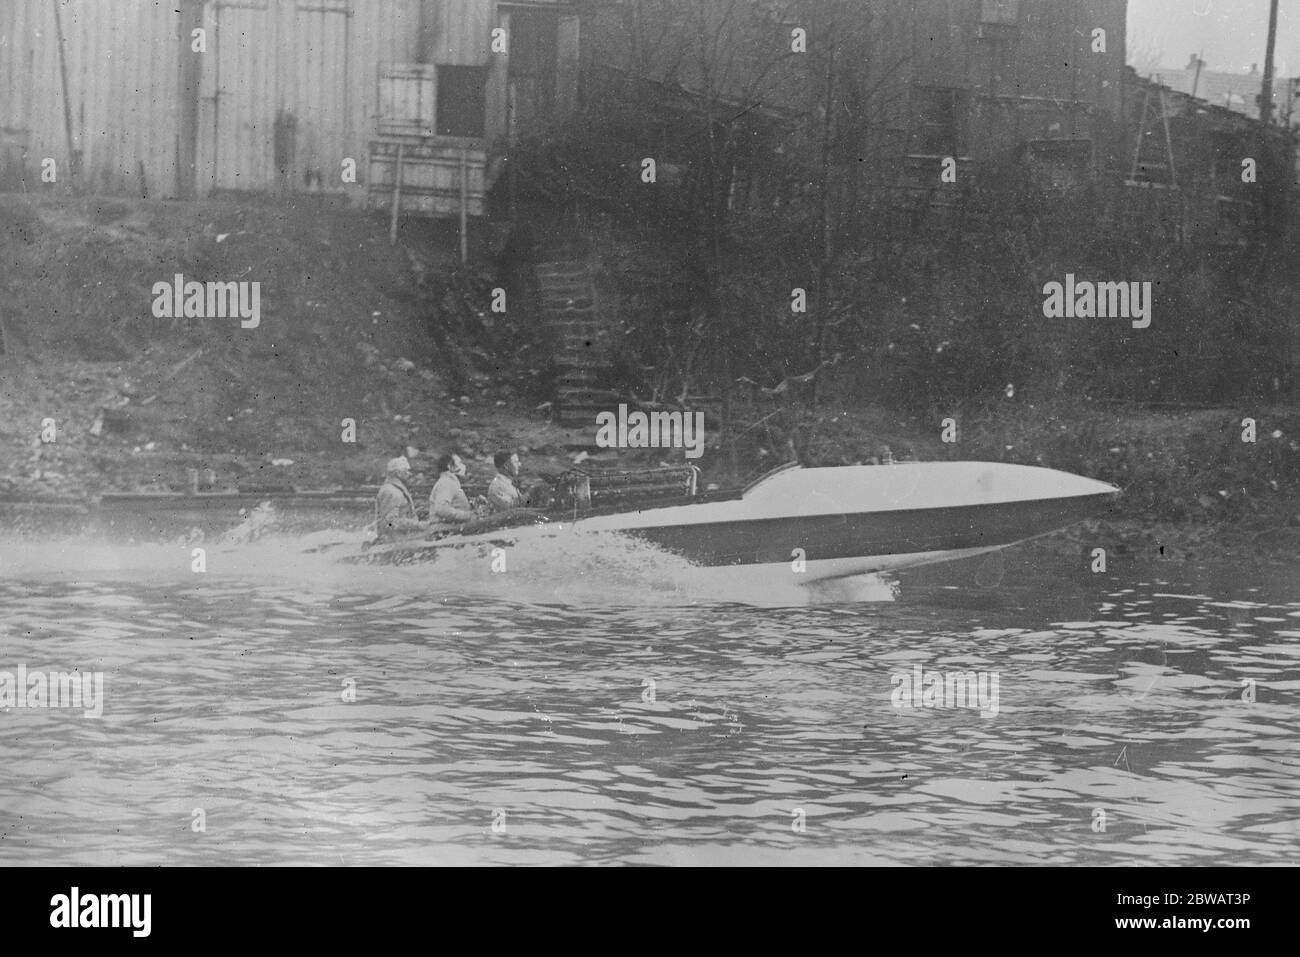 74 miglia all'ora in acqua la vela francese 'Despujols' fotografata durante le sue prove quando ha realizzato una velocità di 120 chilometri ( 74 MPH ) un'ora 25 marzo 1920 Foto Stock